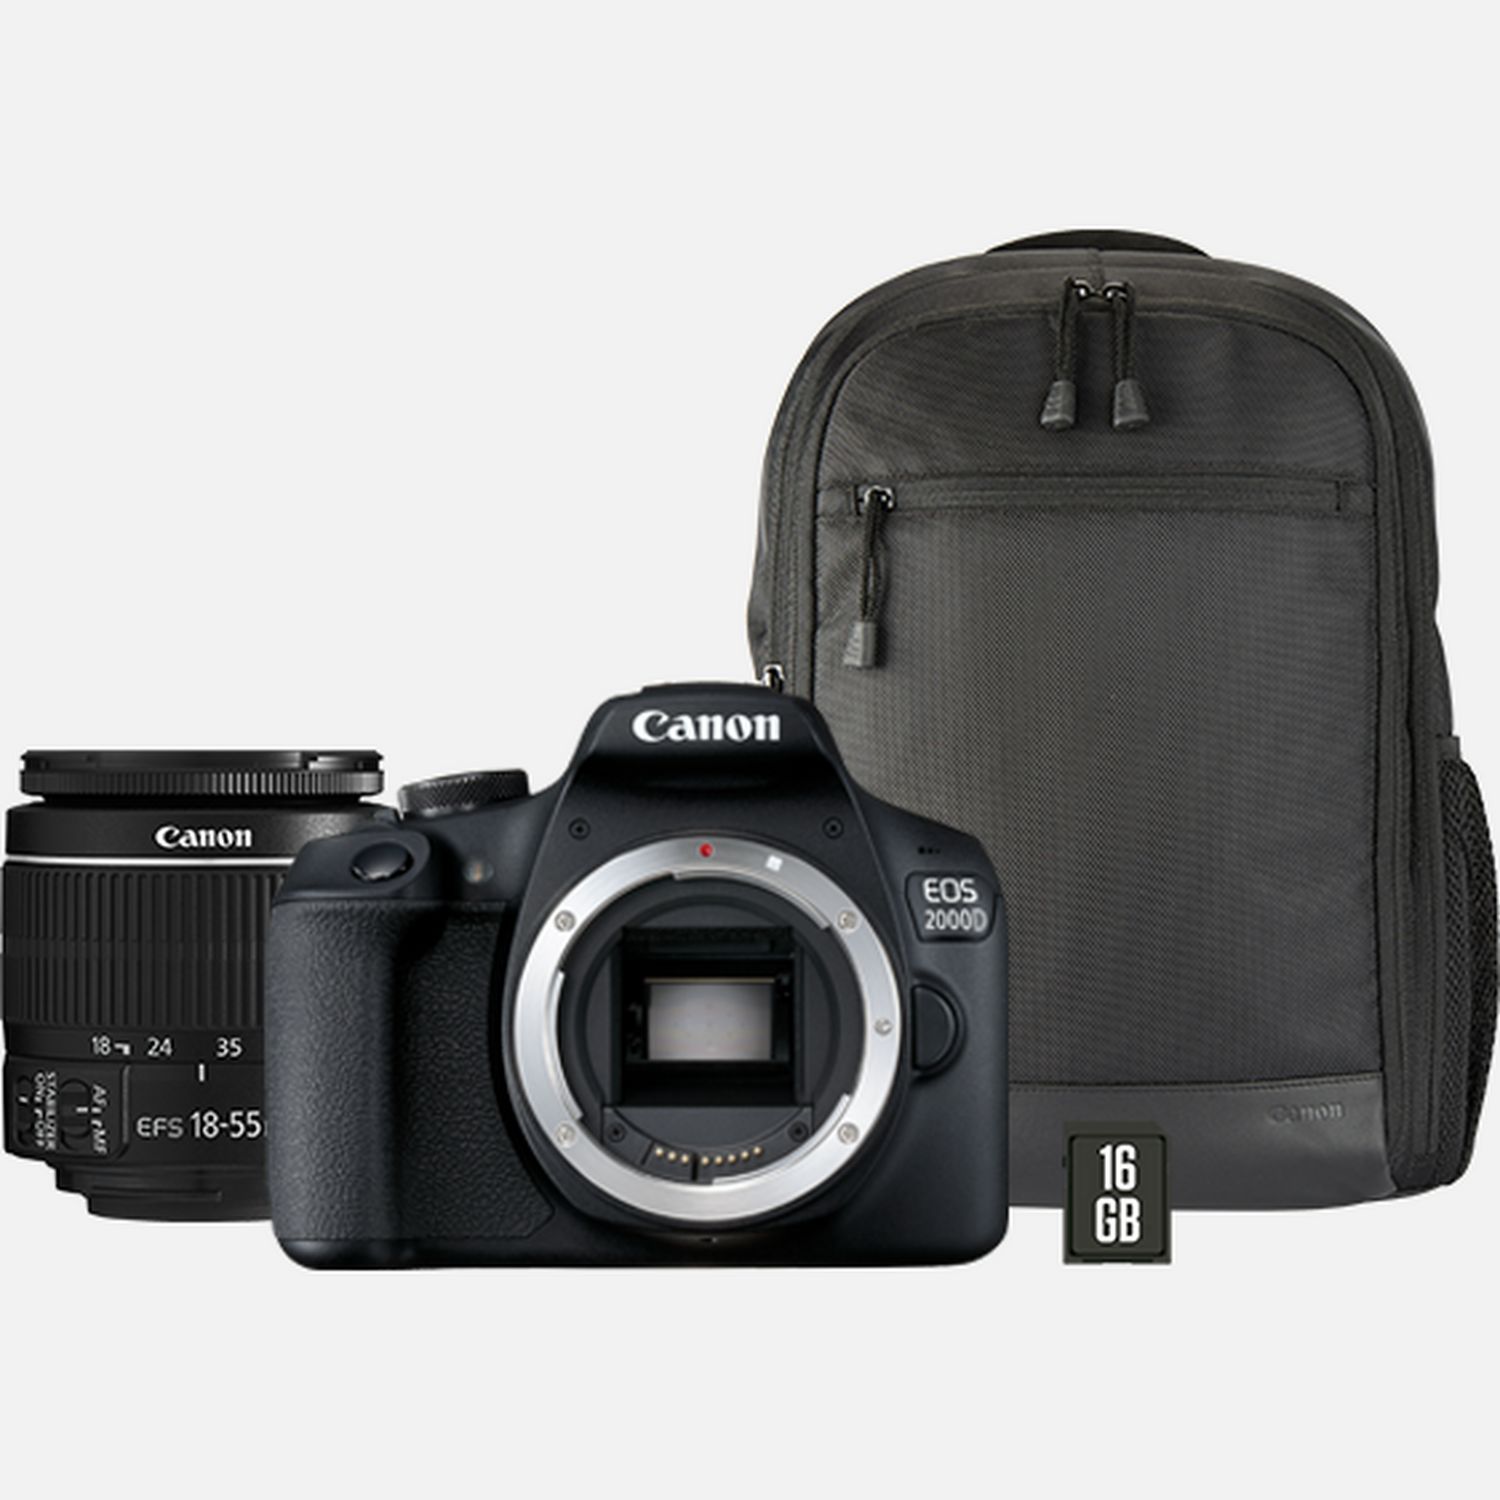 Objektiv in 18-55mm Canon EF-S + 2000D EOS Deutschland Rucksack II + Shop IS WLAN-Kameras Canon — SD-Karte +